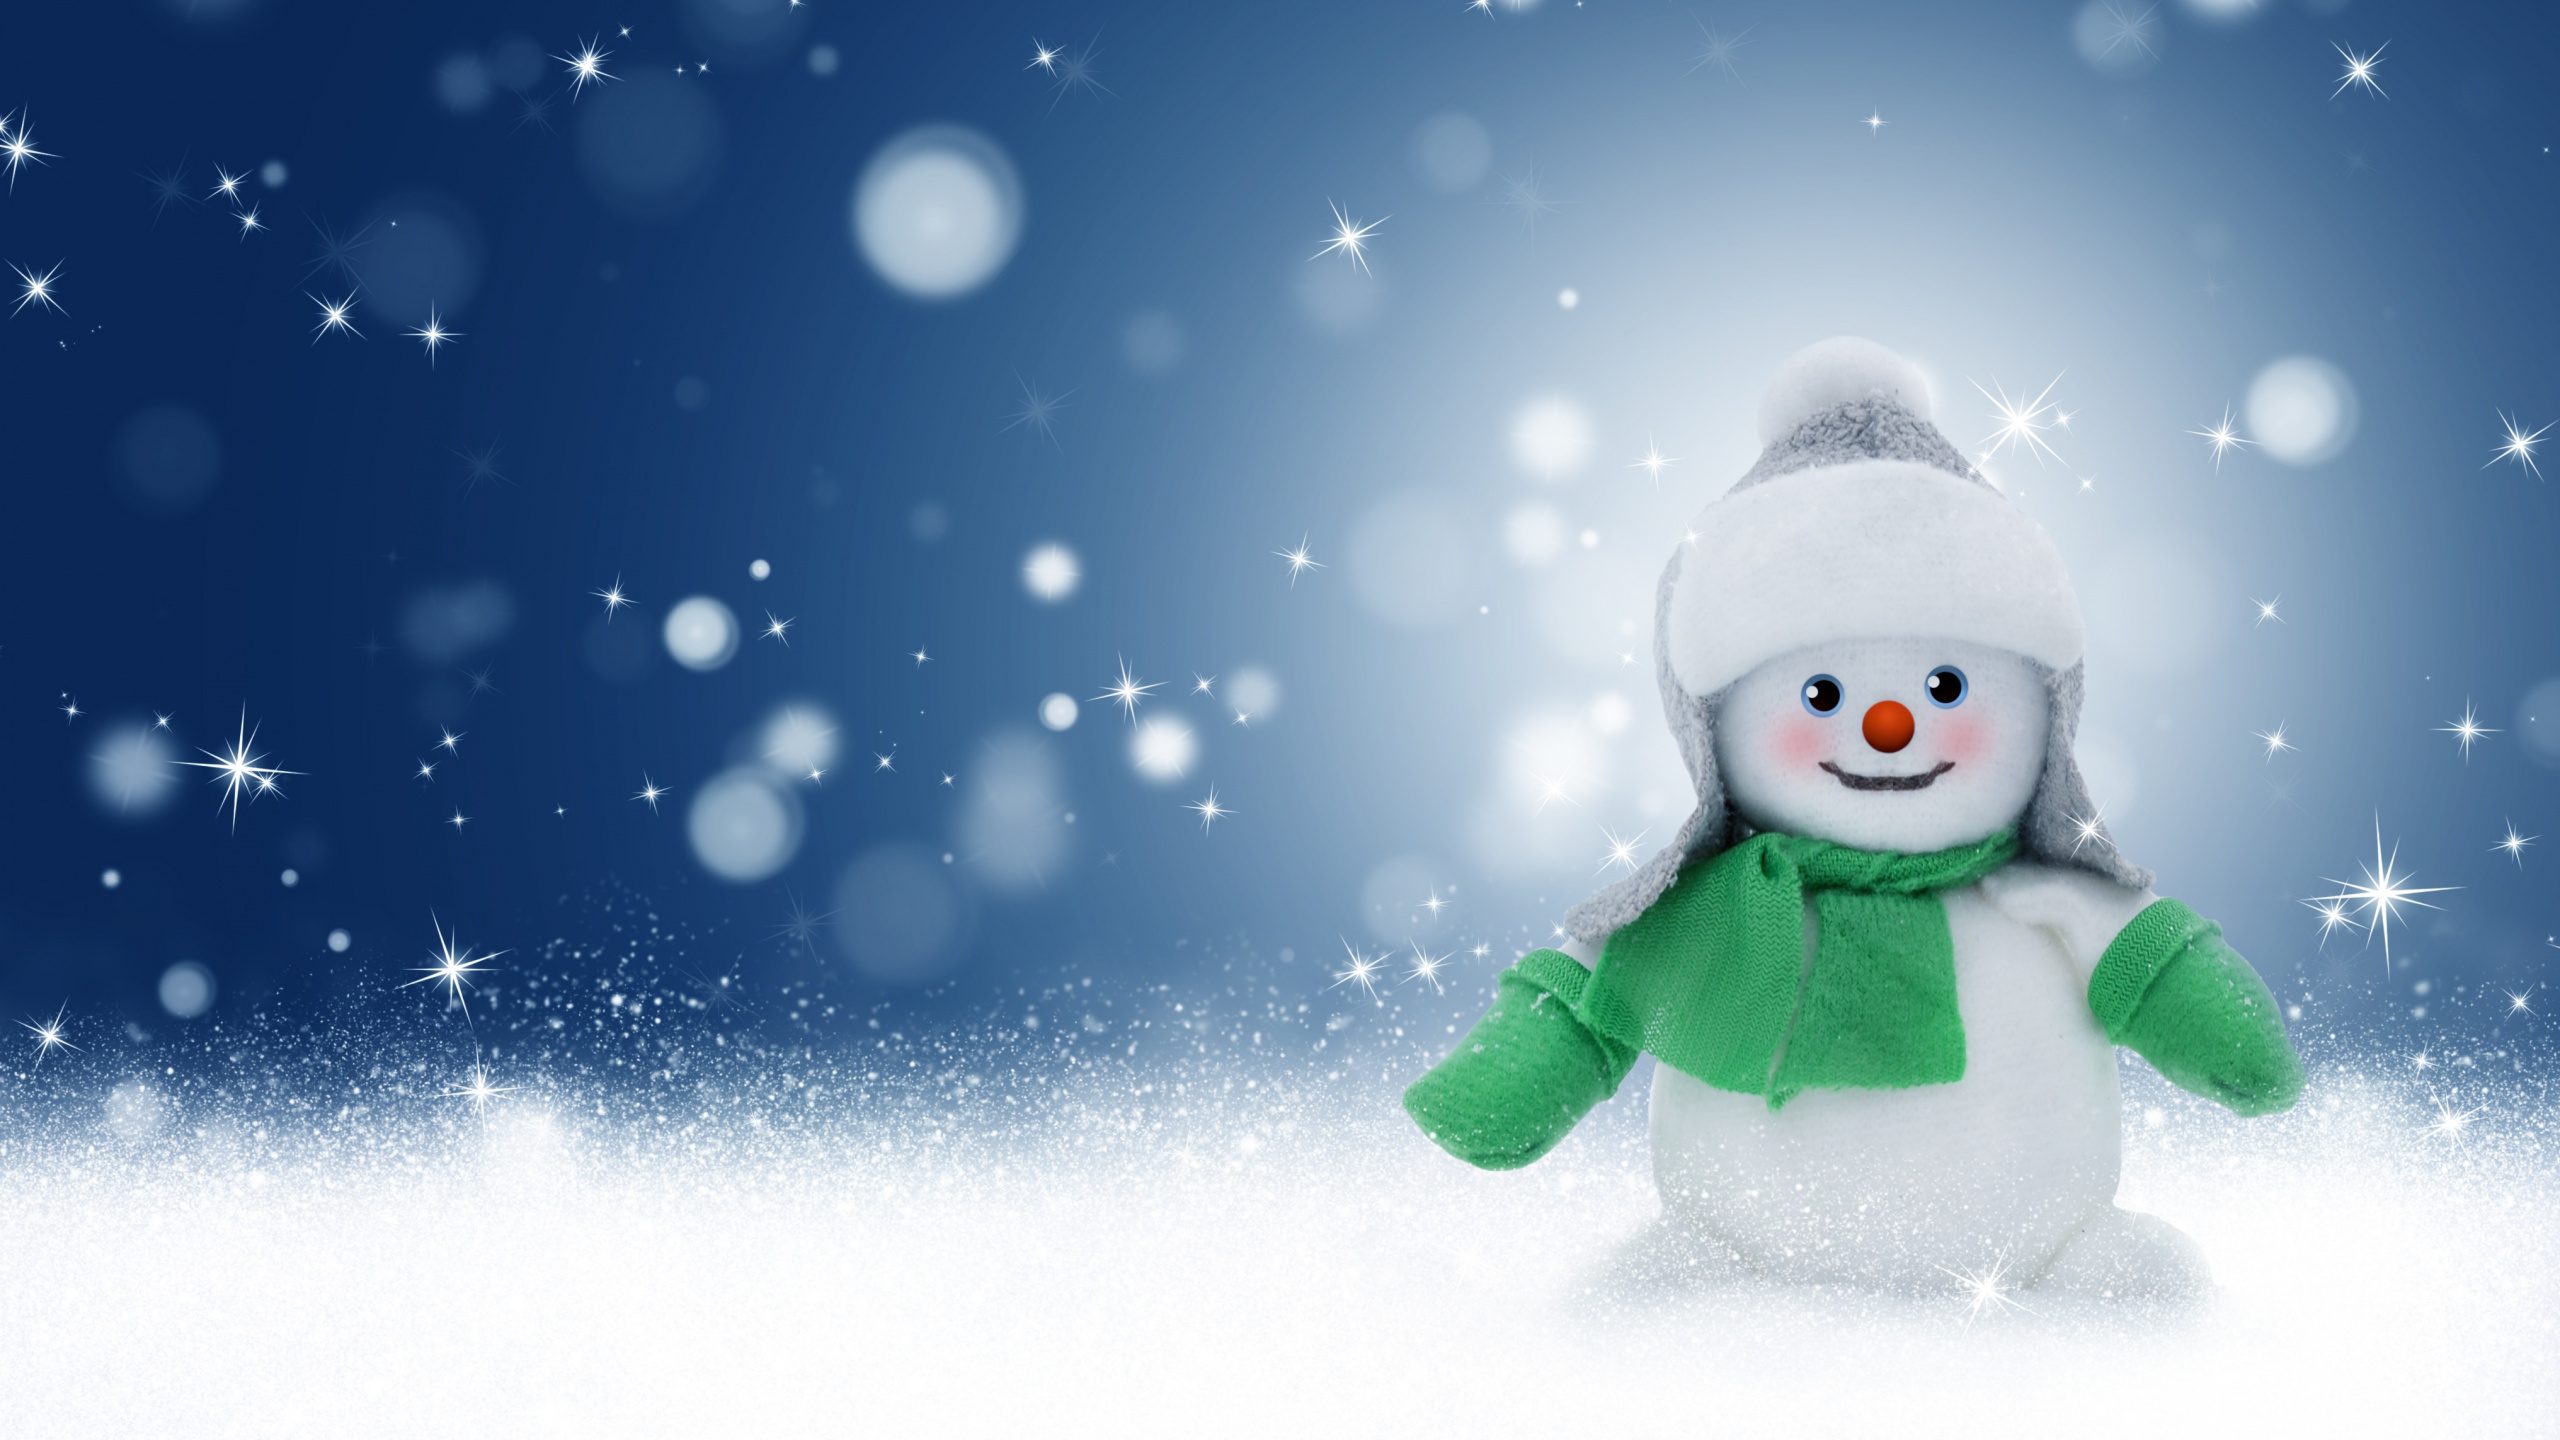 圣诞节那天, 冬天, 雪人, 圣诞前夕, 冻结 壁纸 2560x1440 允许